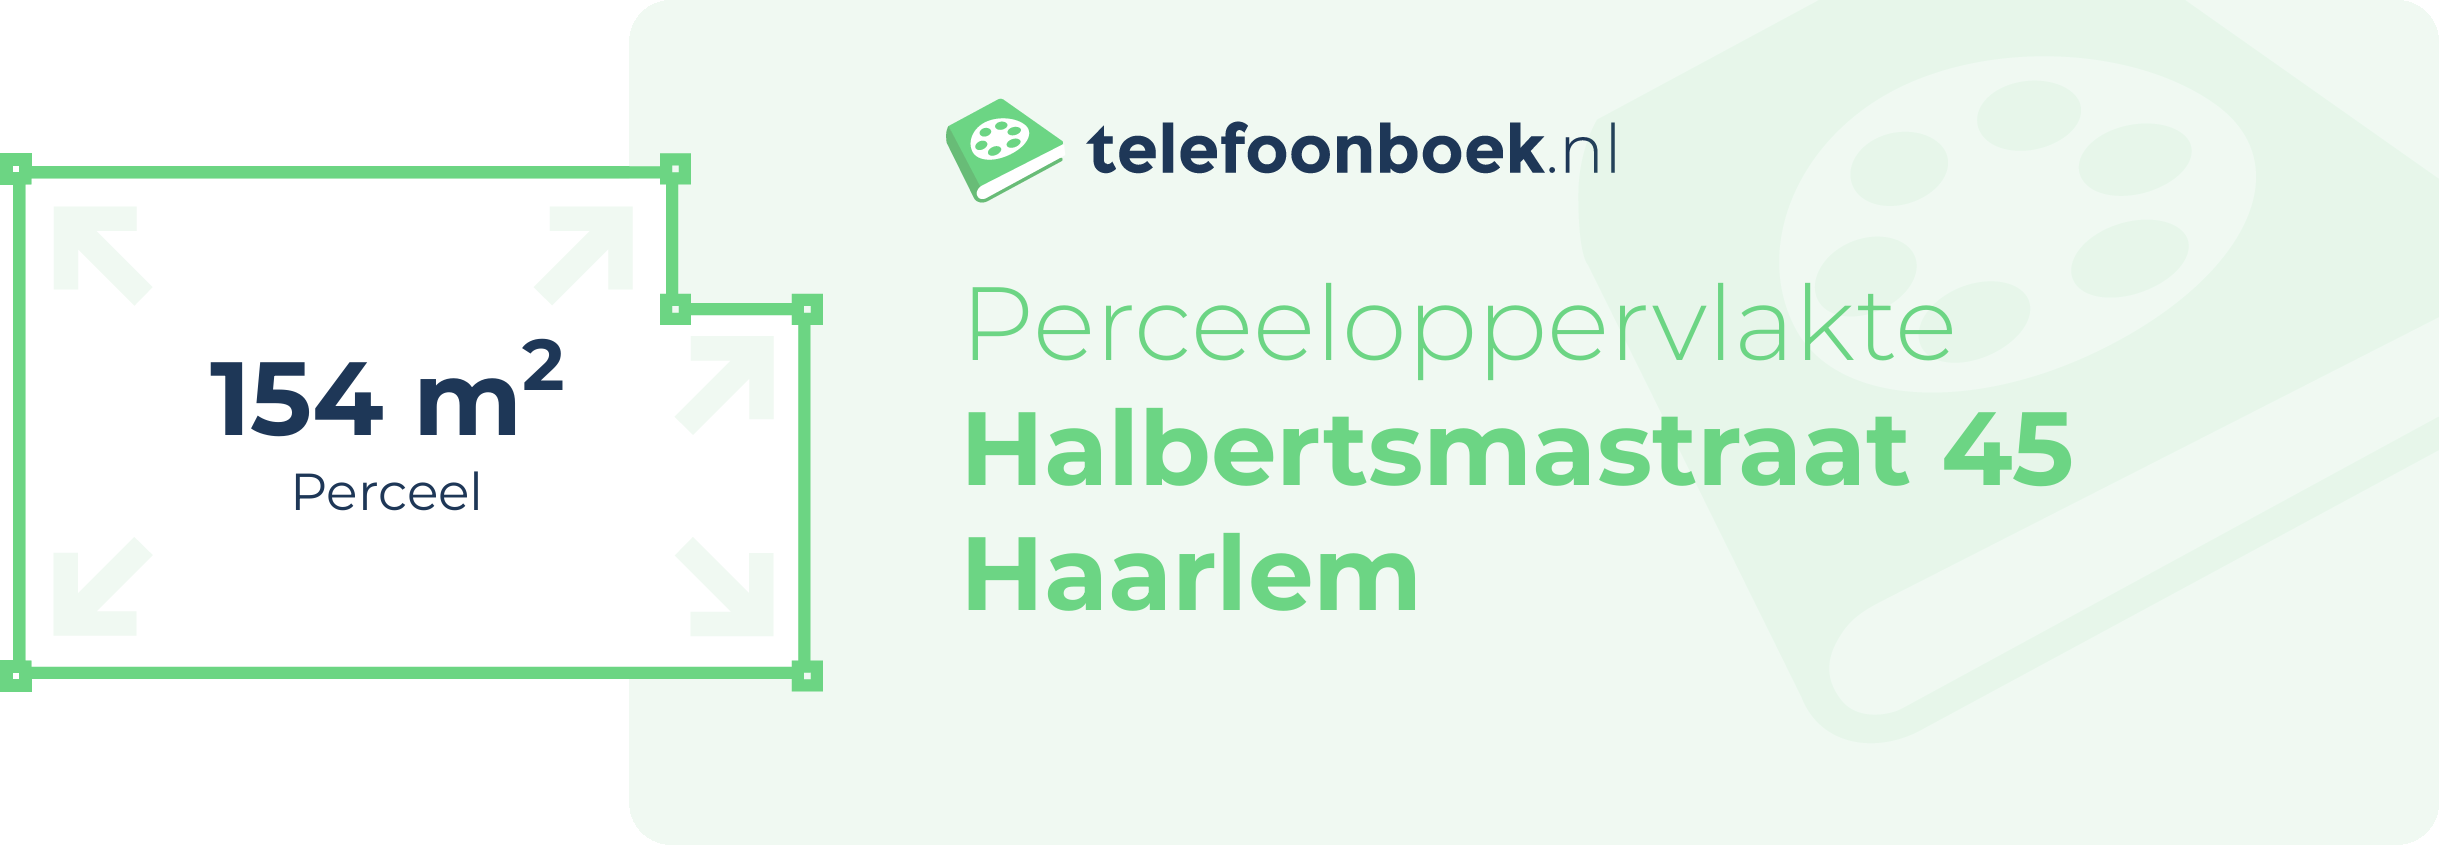 Perceeloppervlakte Halbertsmastraat 45 Haarlem